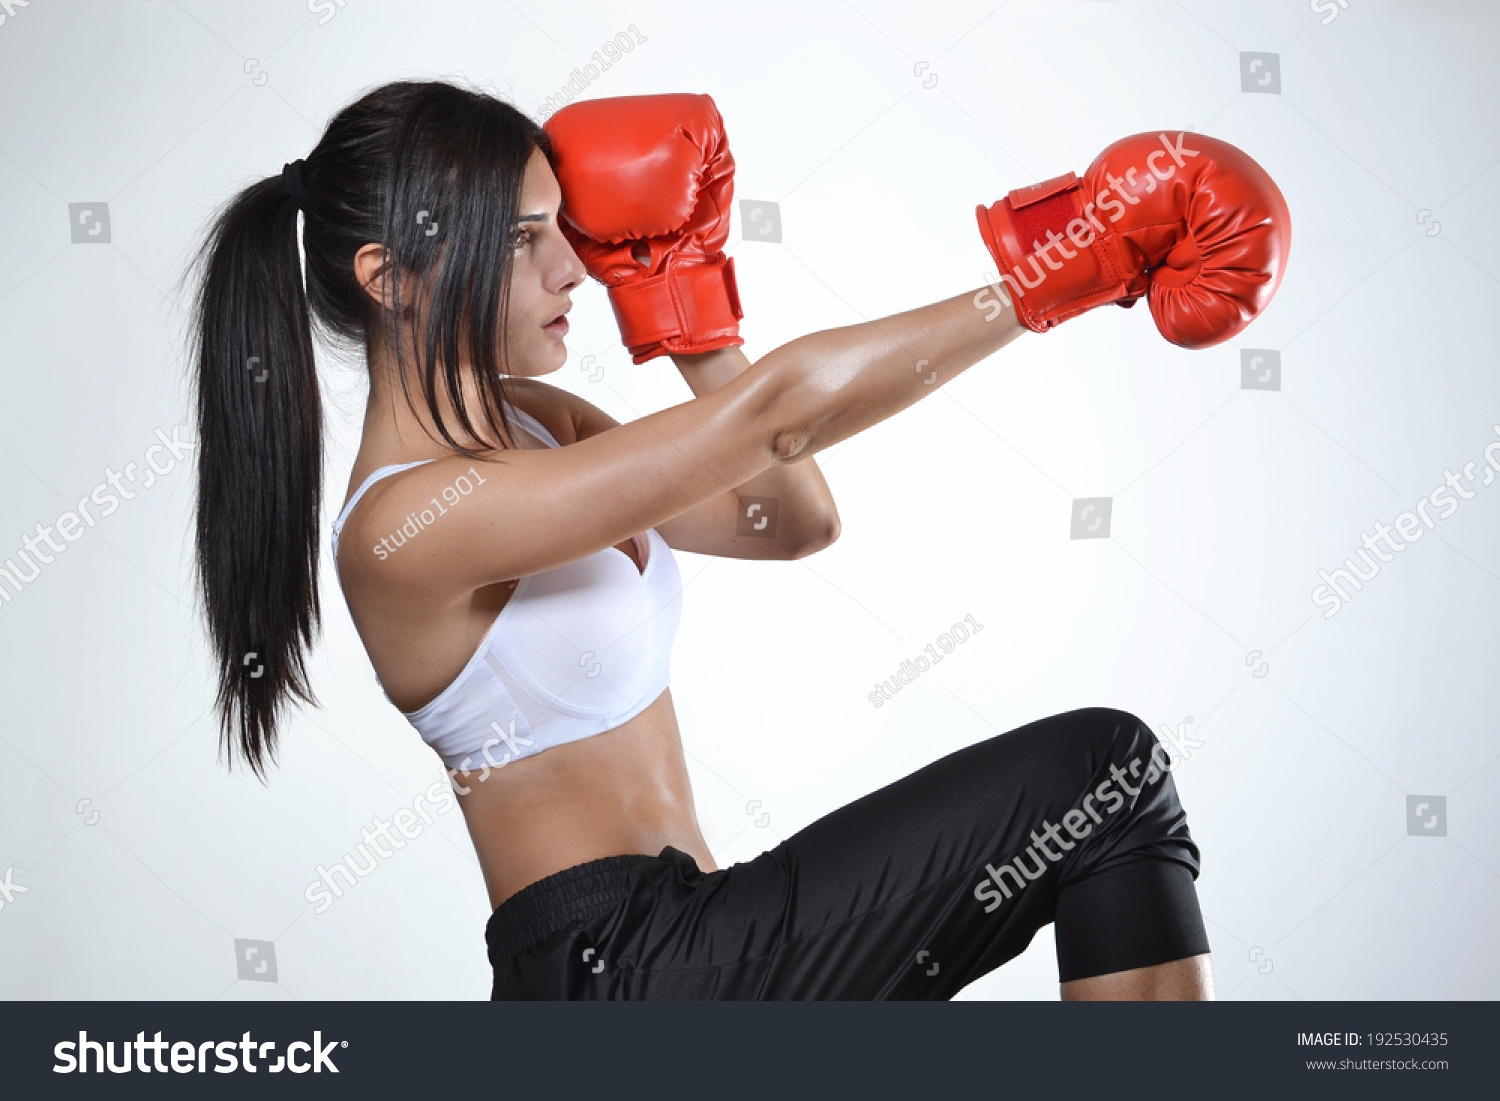 Boxing lady naked